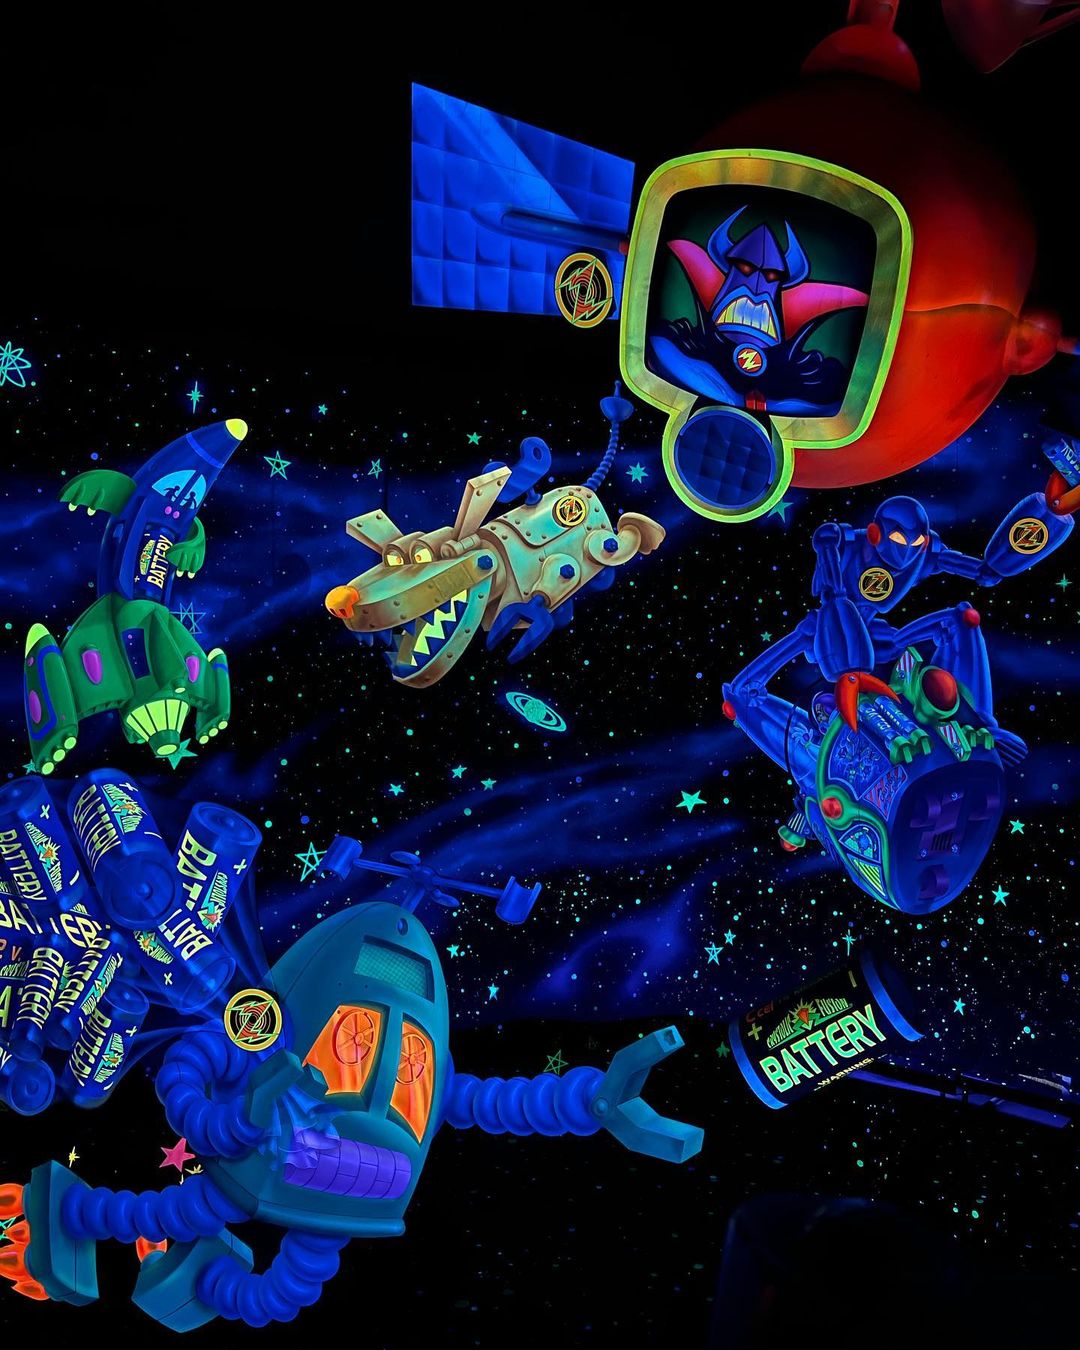 Buzz Lightyear’s Space Ranger Spin - Atração do Toy Story no Magic Kingdom 